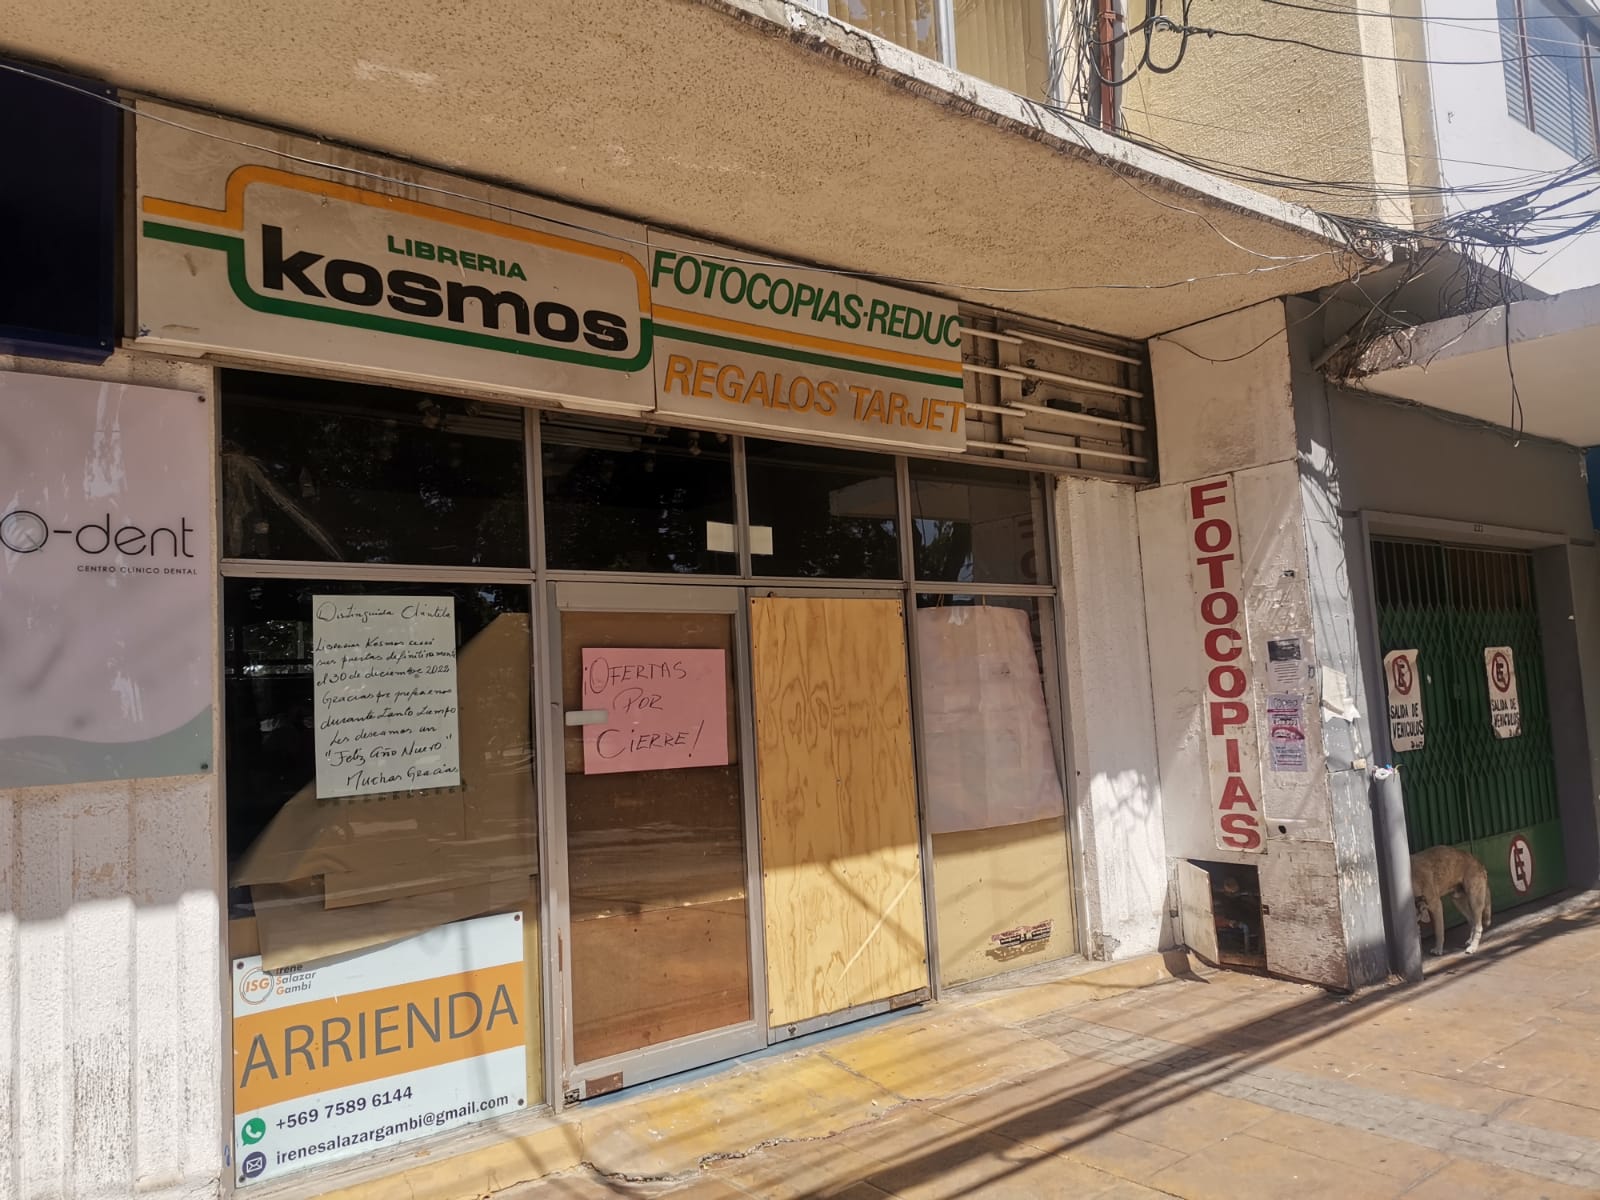 Frontis de Librería Kosmos en Quillota, local que cerró el 31 de diciembre de 2022